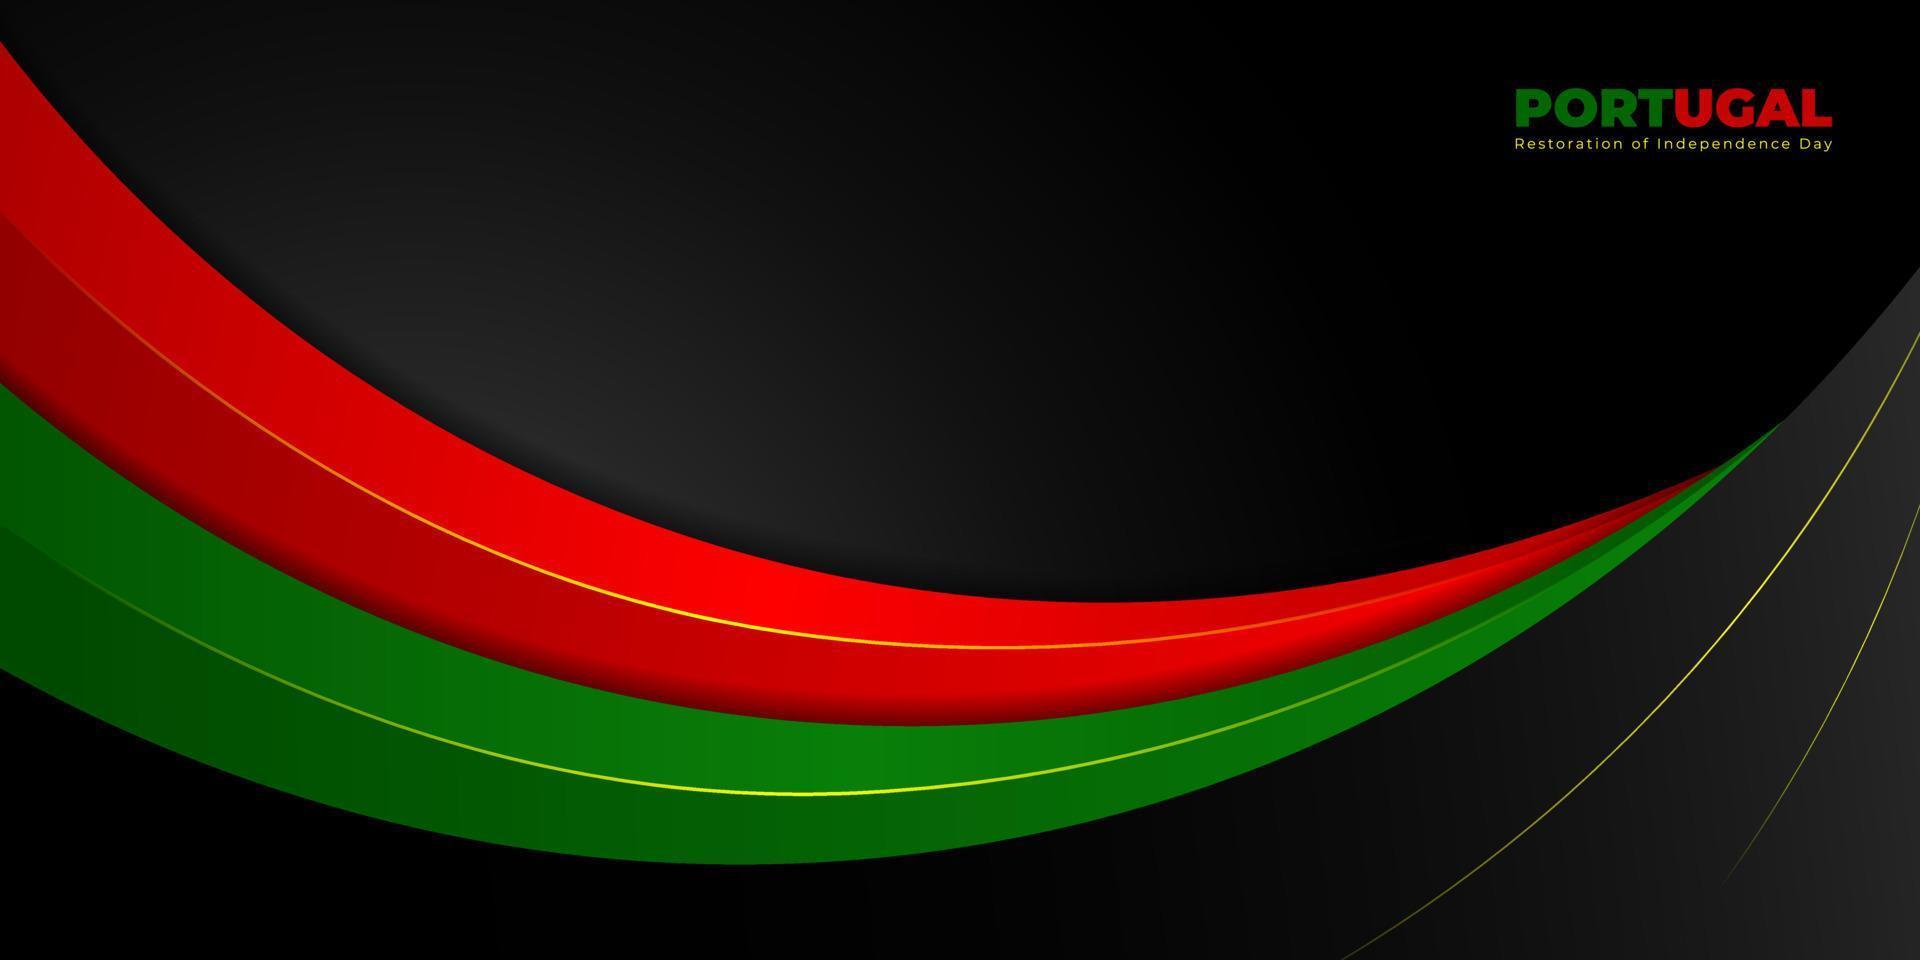 design abstrato ondulado vermelho e verde com fundo preto. design de modelo de dia da independência da restauração de portugal. vetor